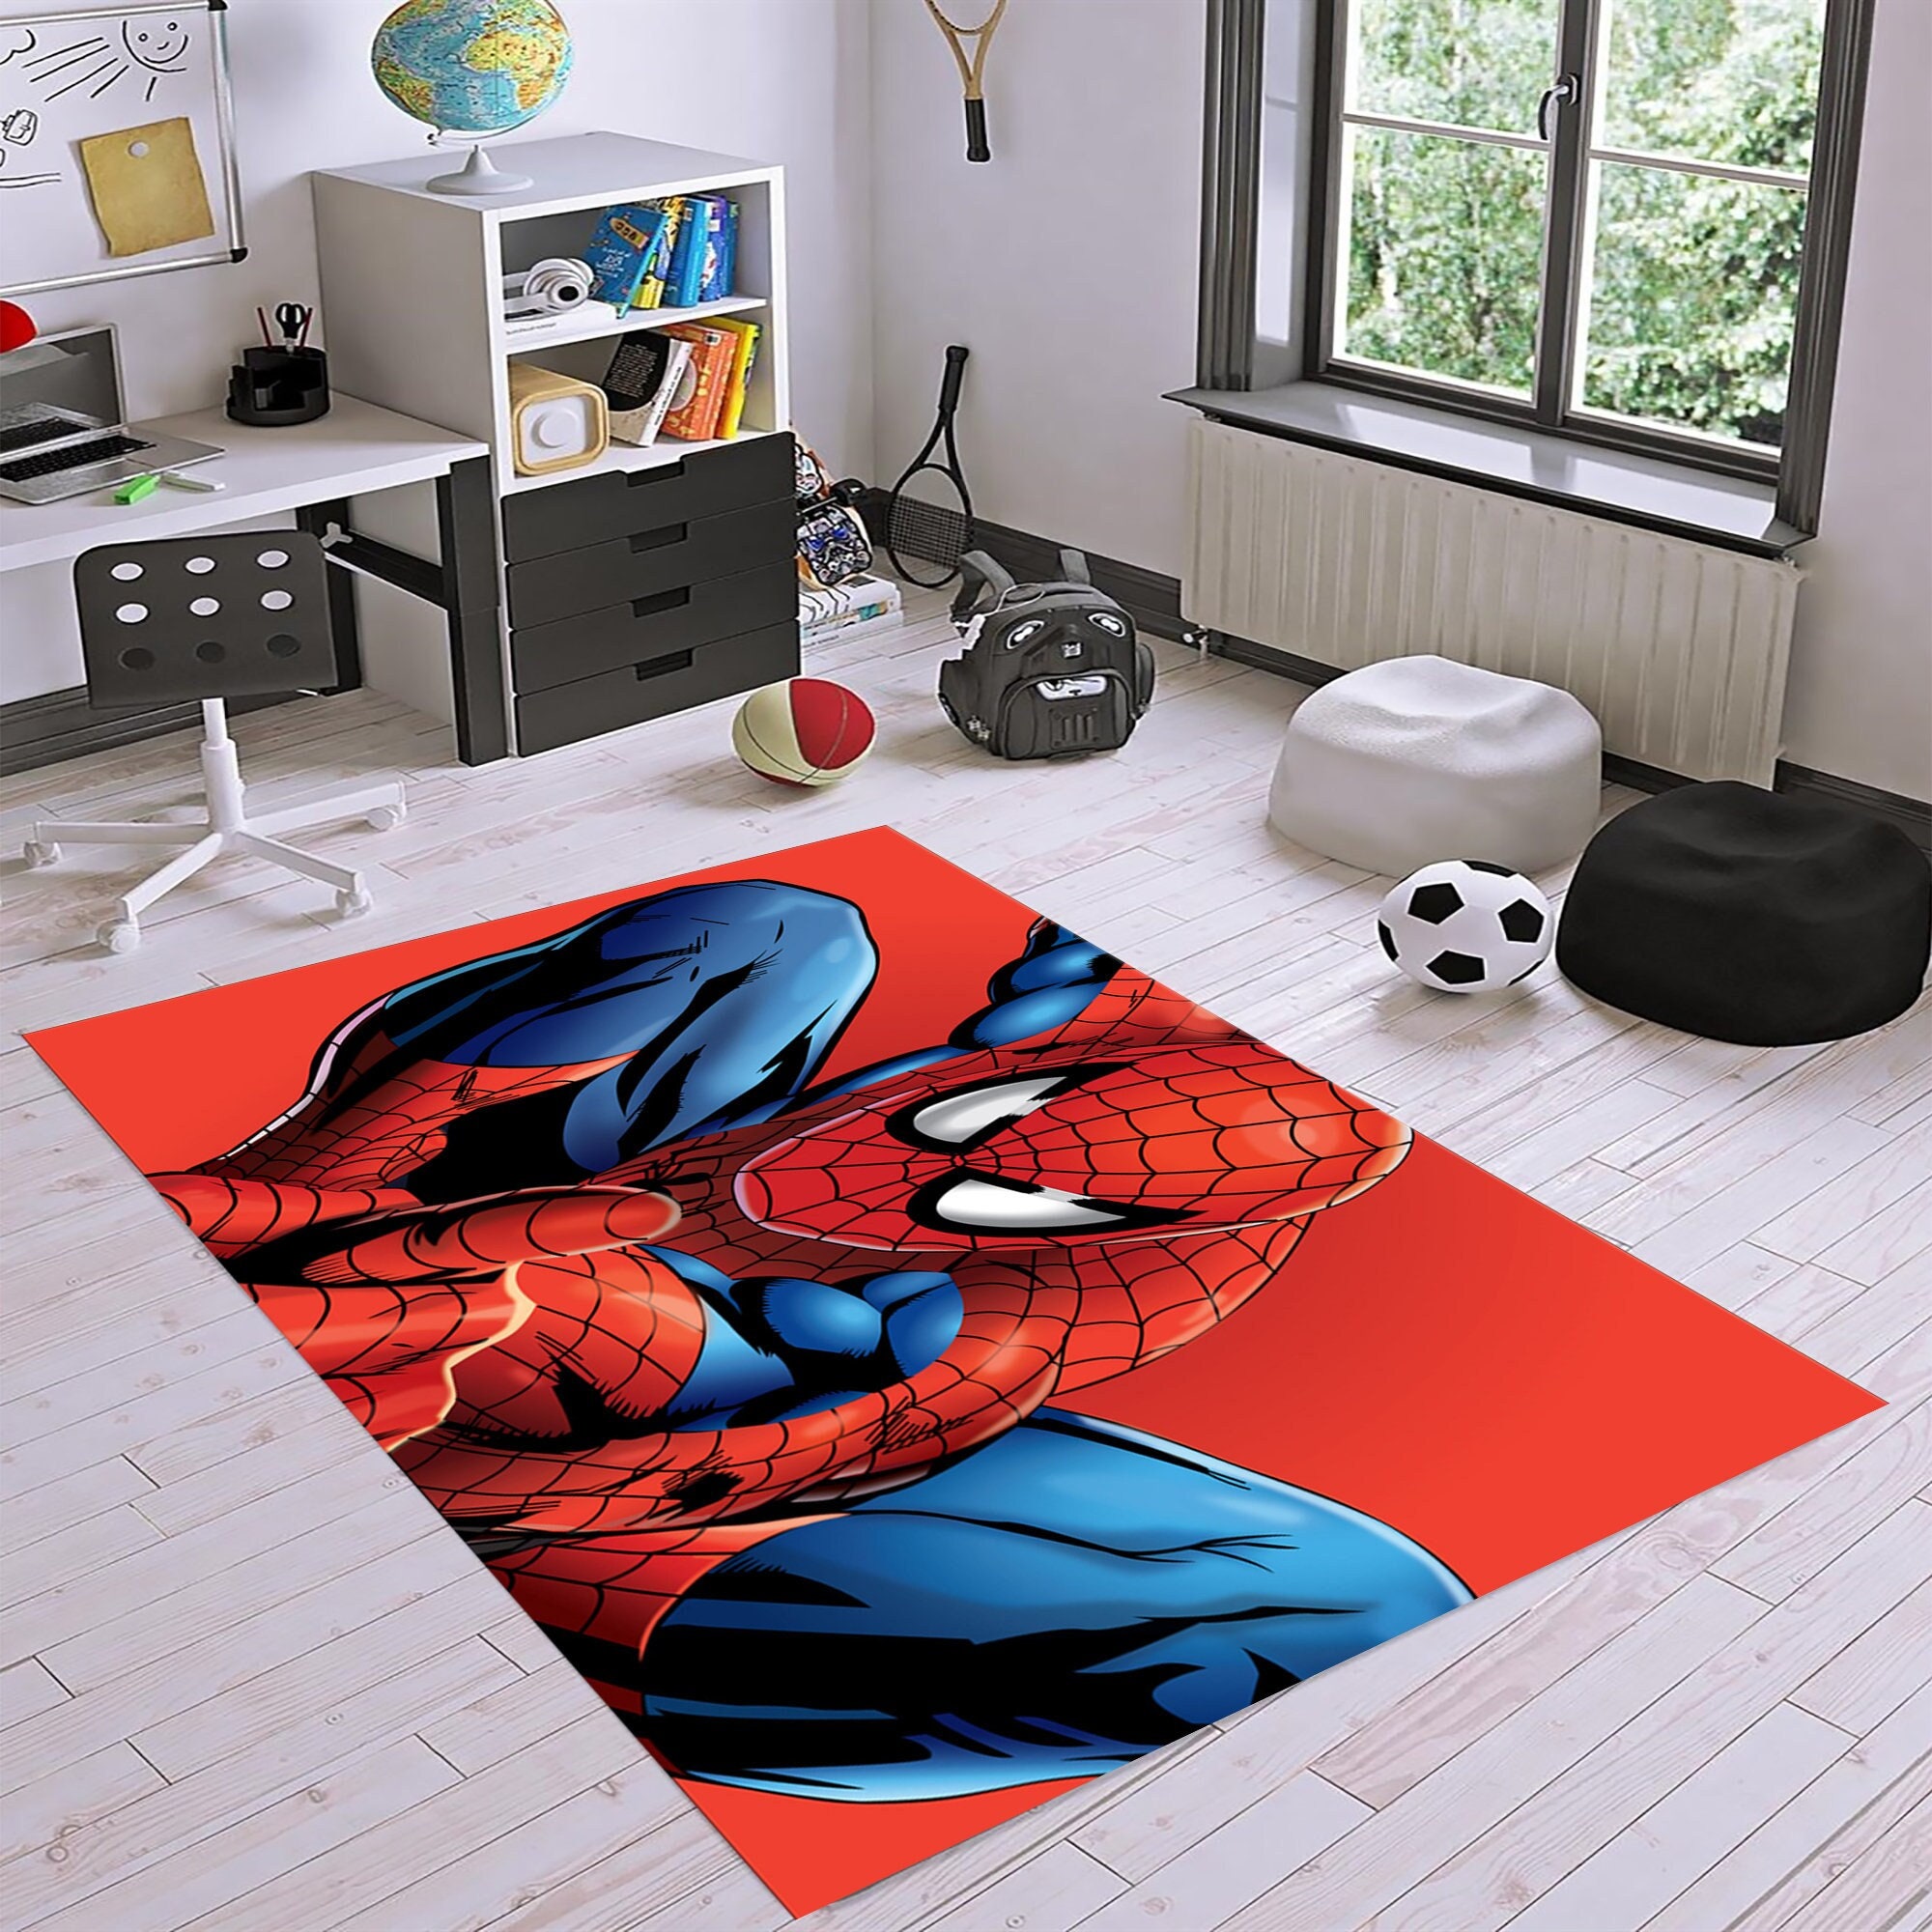 Tappeto SpiderMan, Tappeto Spider Man, Tappeto per camera dei